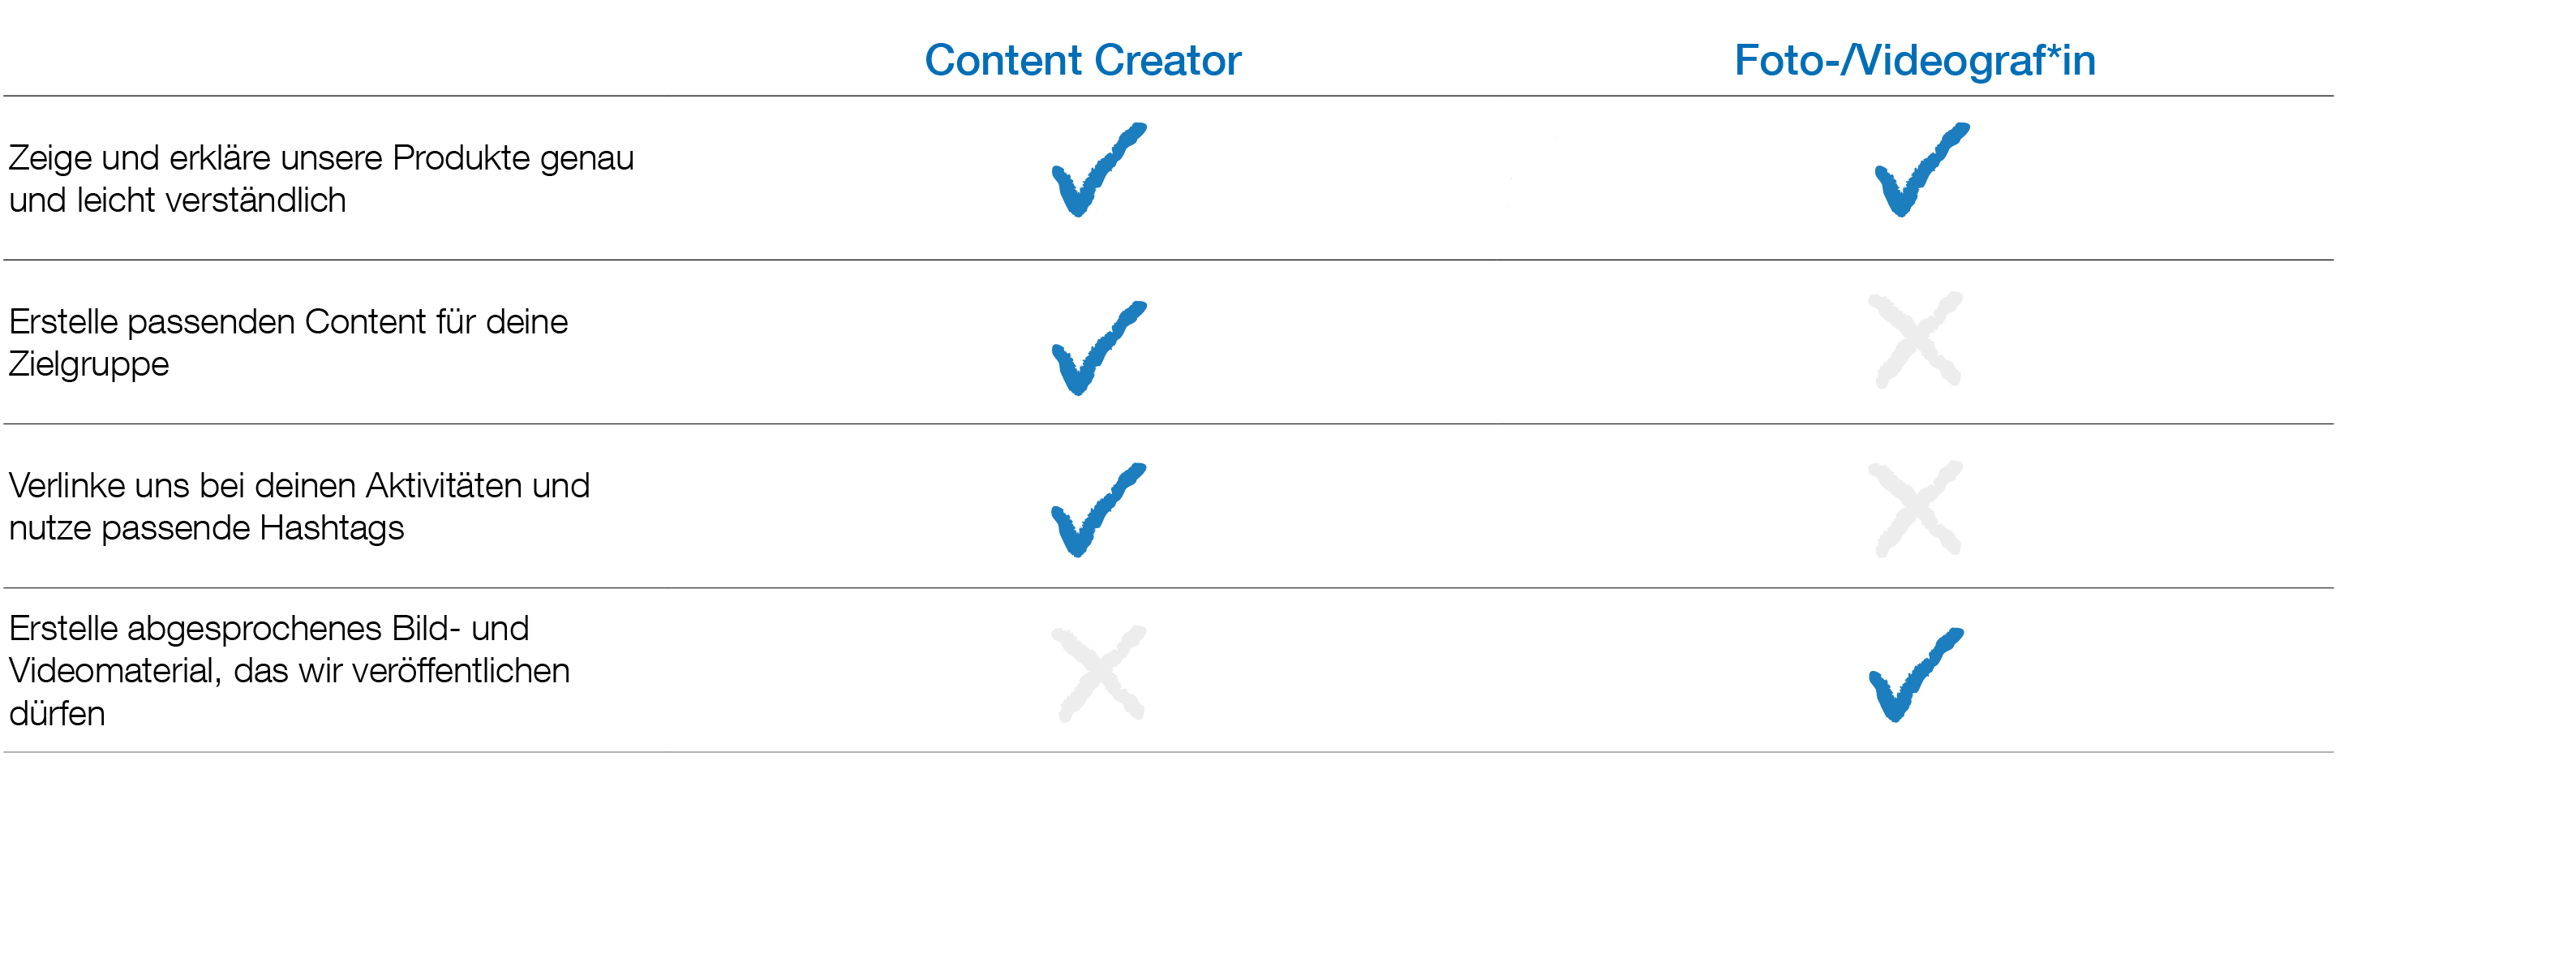 Aufgaben, die ein Content-Creator bei Weicon erfüllen sollte